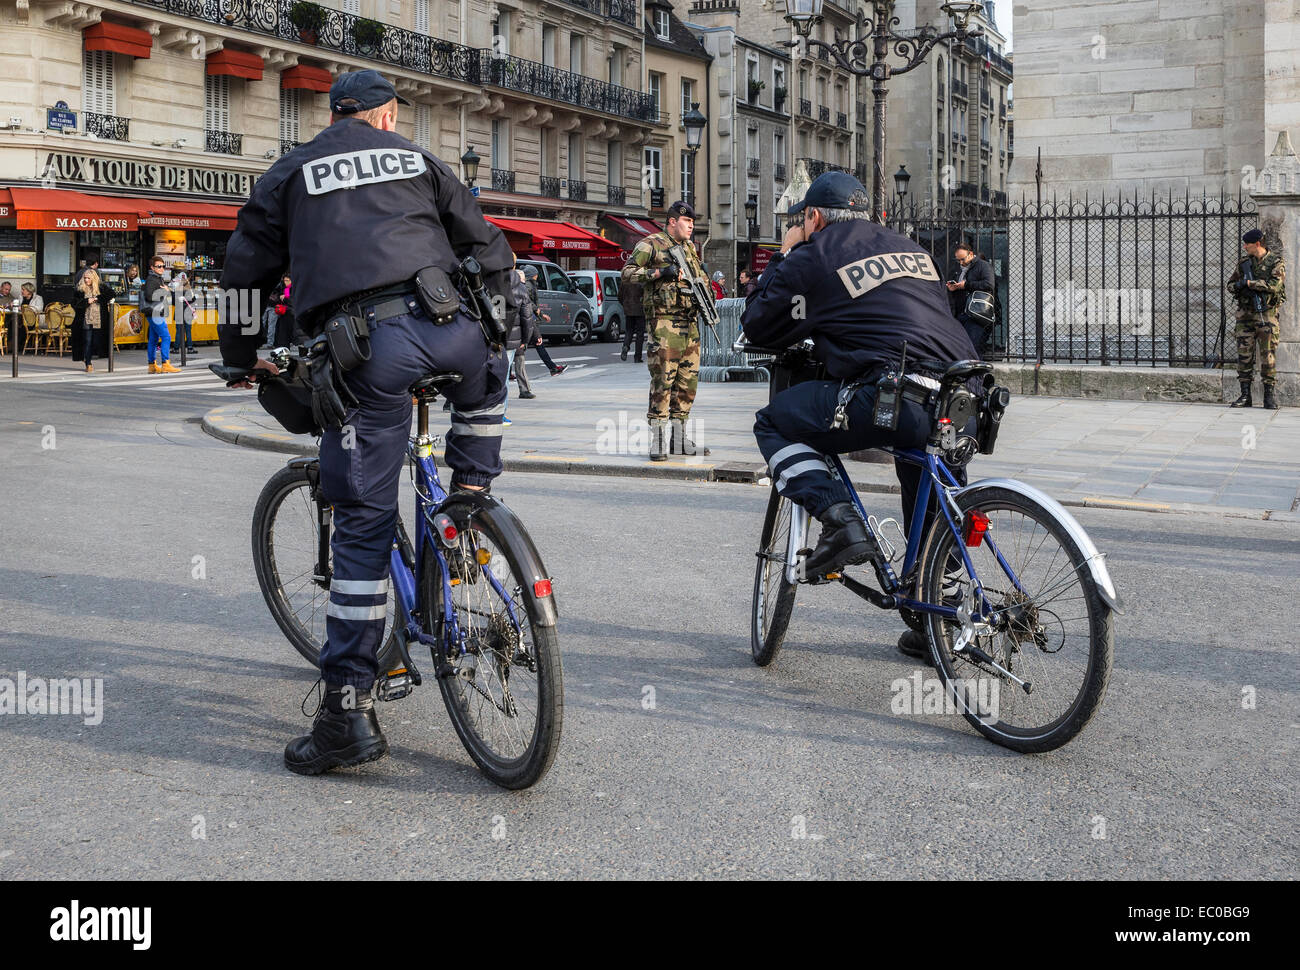 La polizia militari street parigi francia vigore Foto Stock